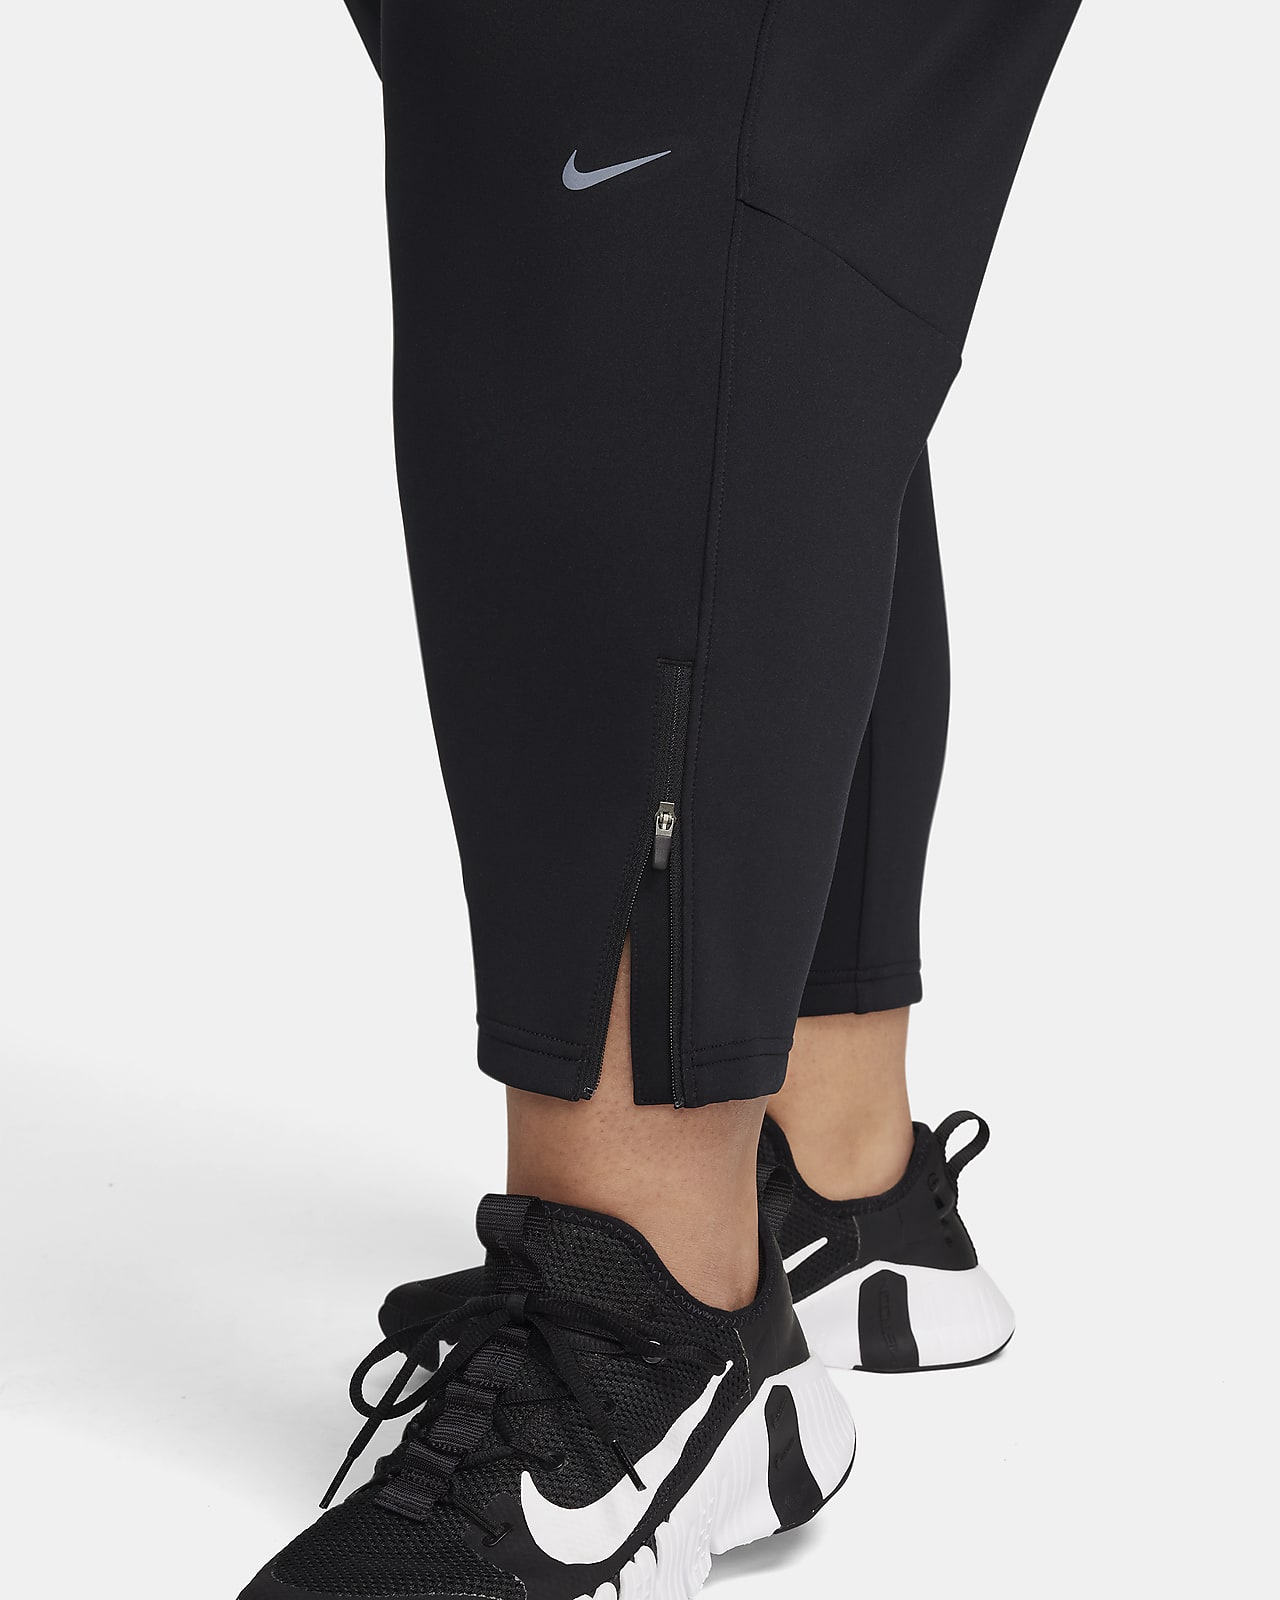 Nike Black Dri-Fit Loose Fitting Training Capris Women's Size S